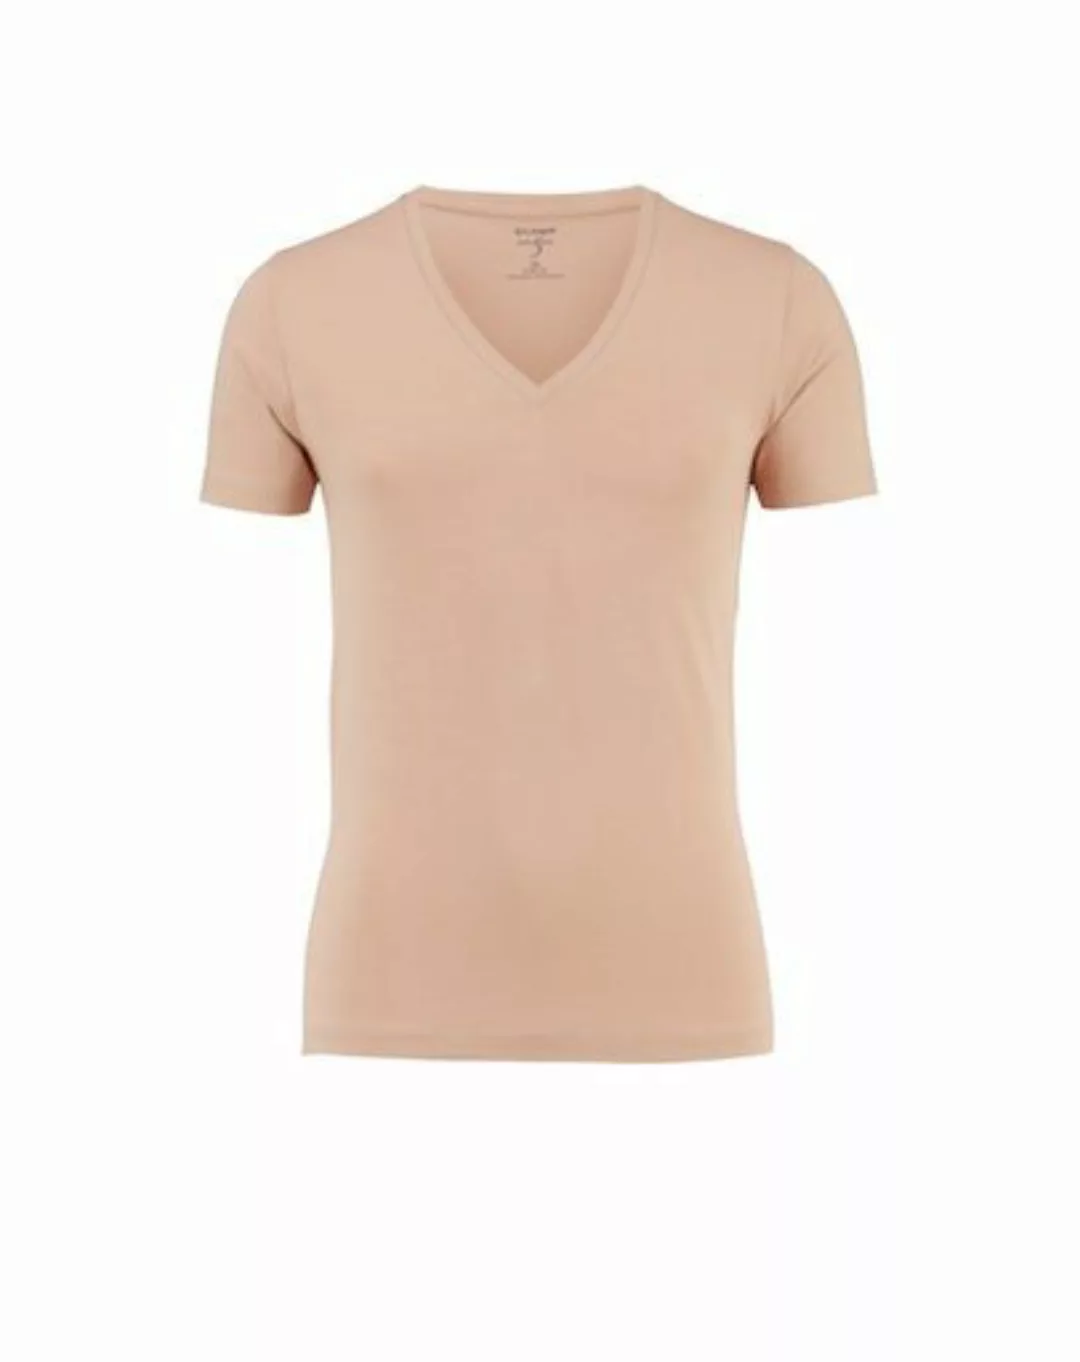 OLYMP T-Shirt Level 5 body fit günstig online kaufen